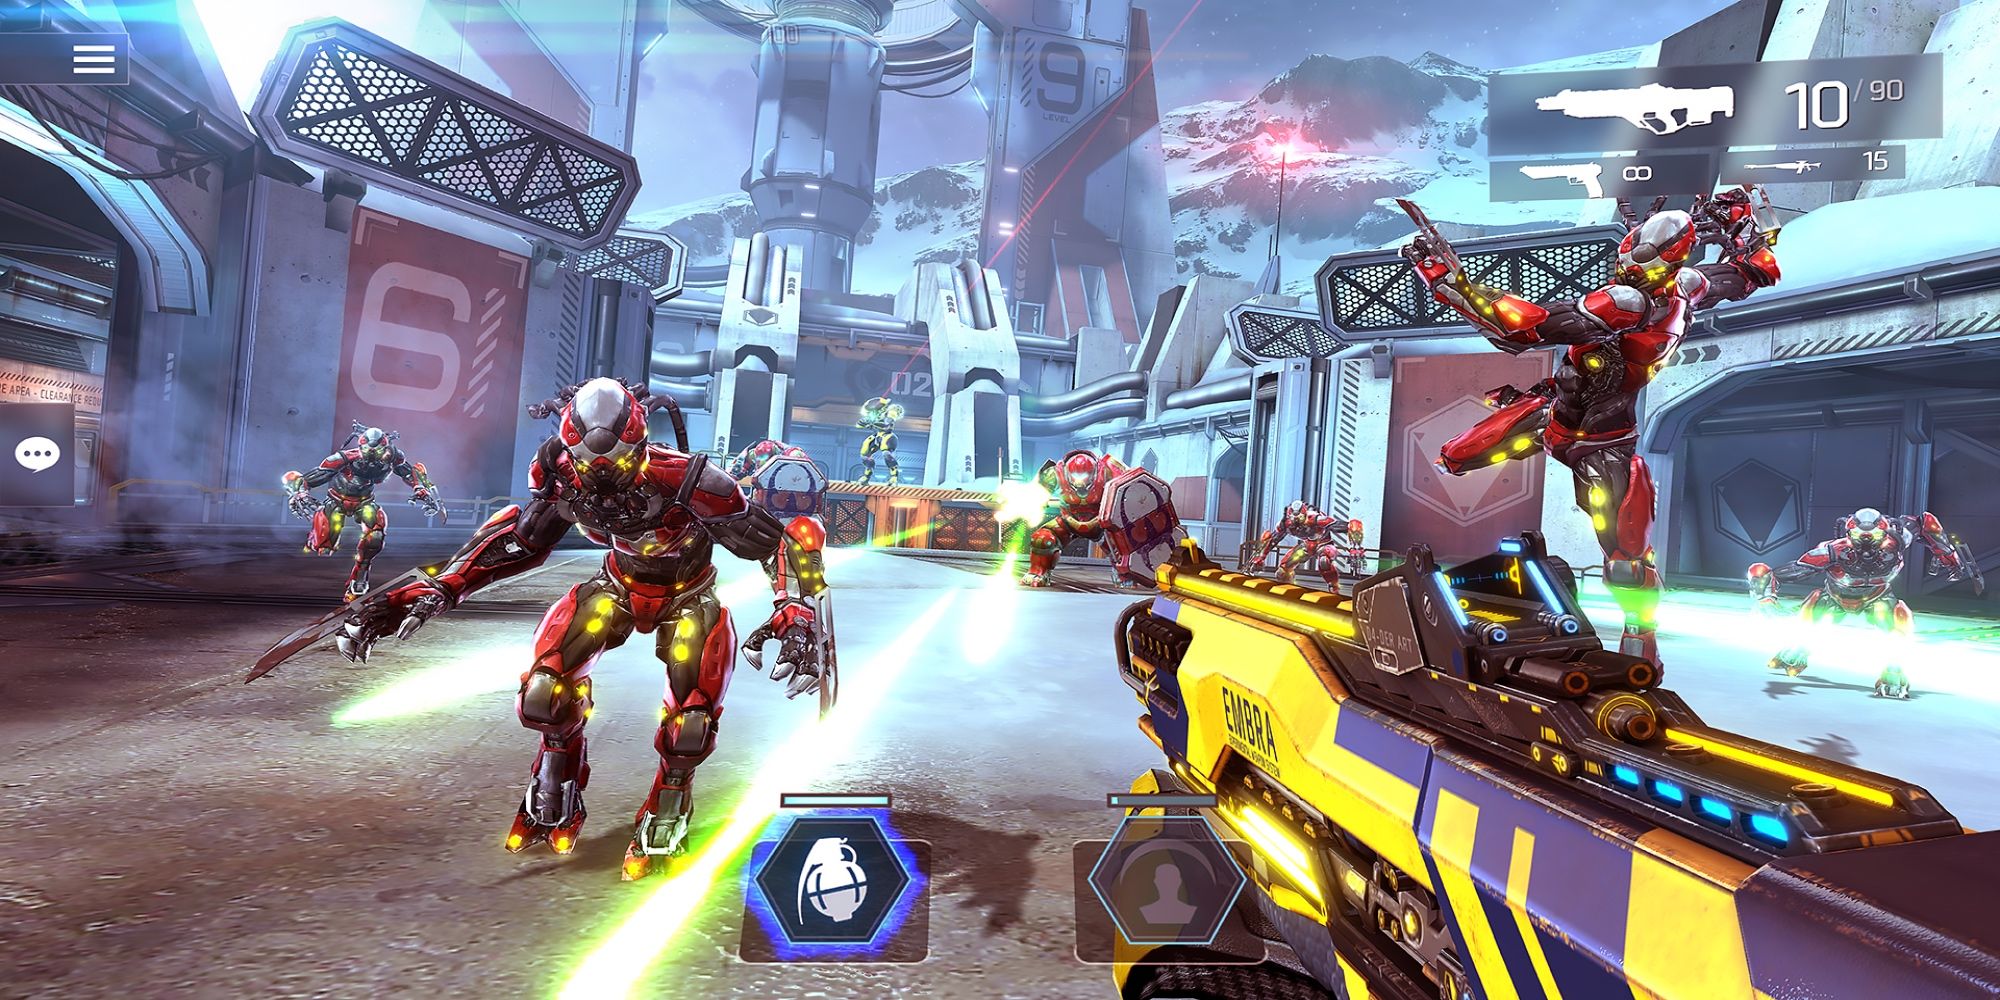 El jugador lucha contra extraterrestres con rifles de asalto.